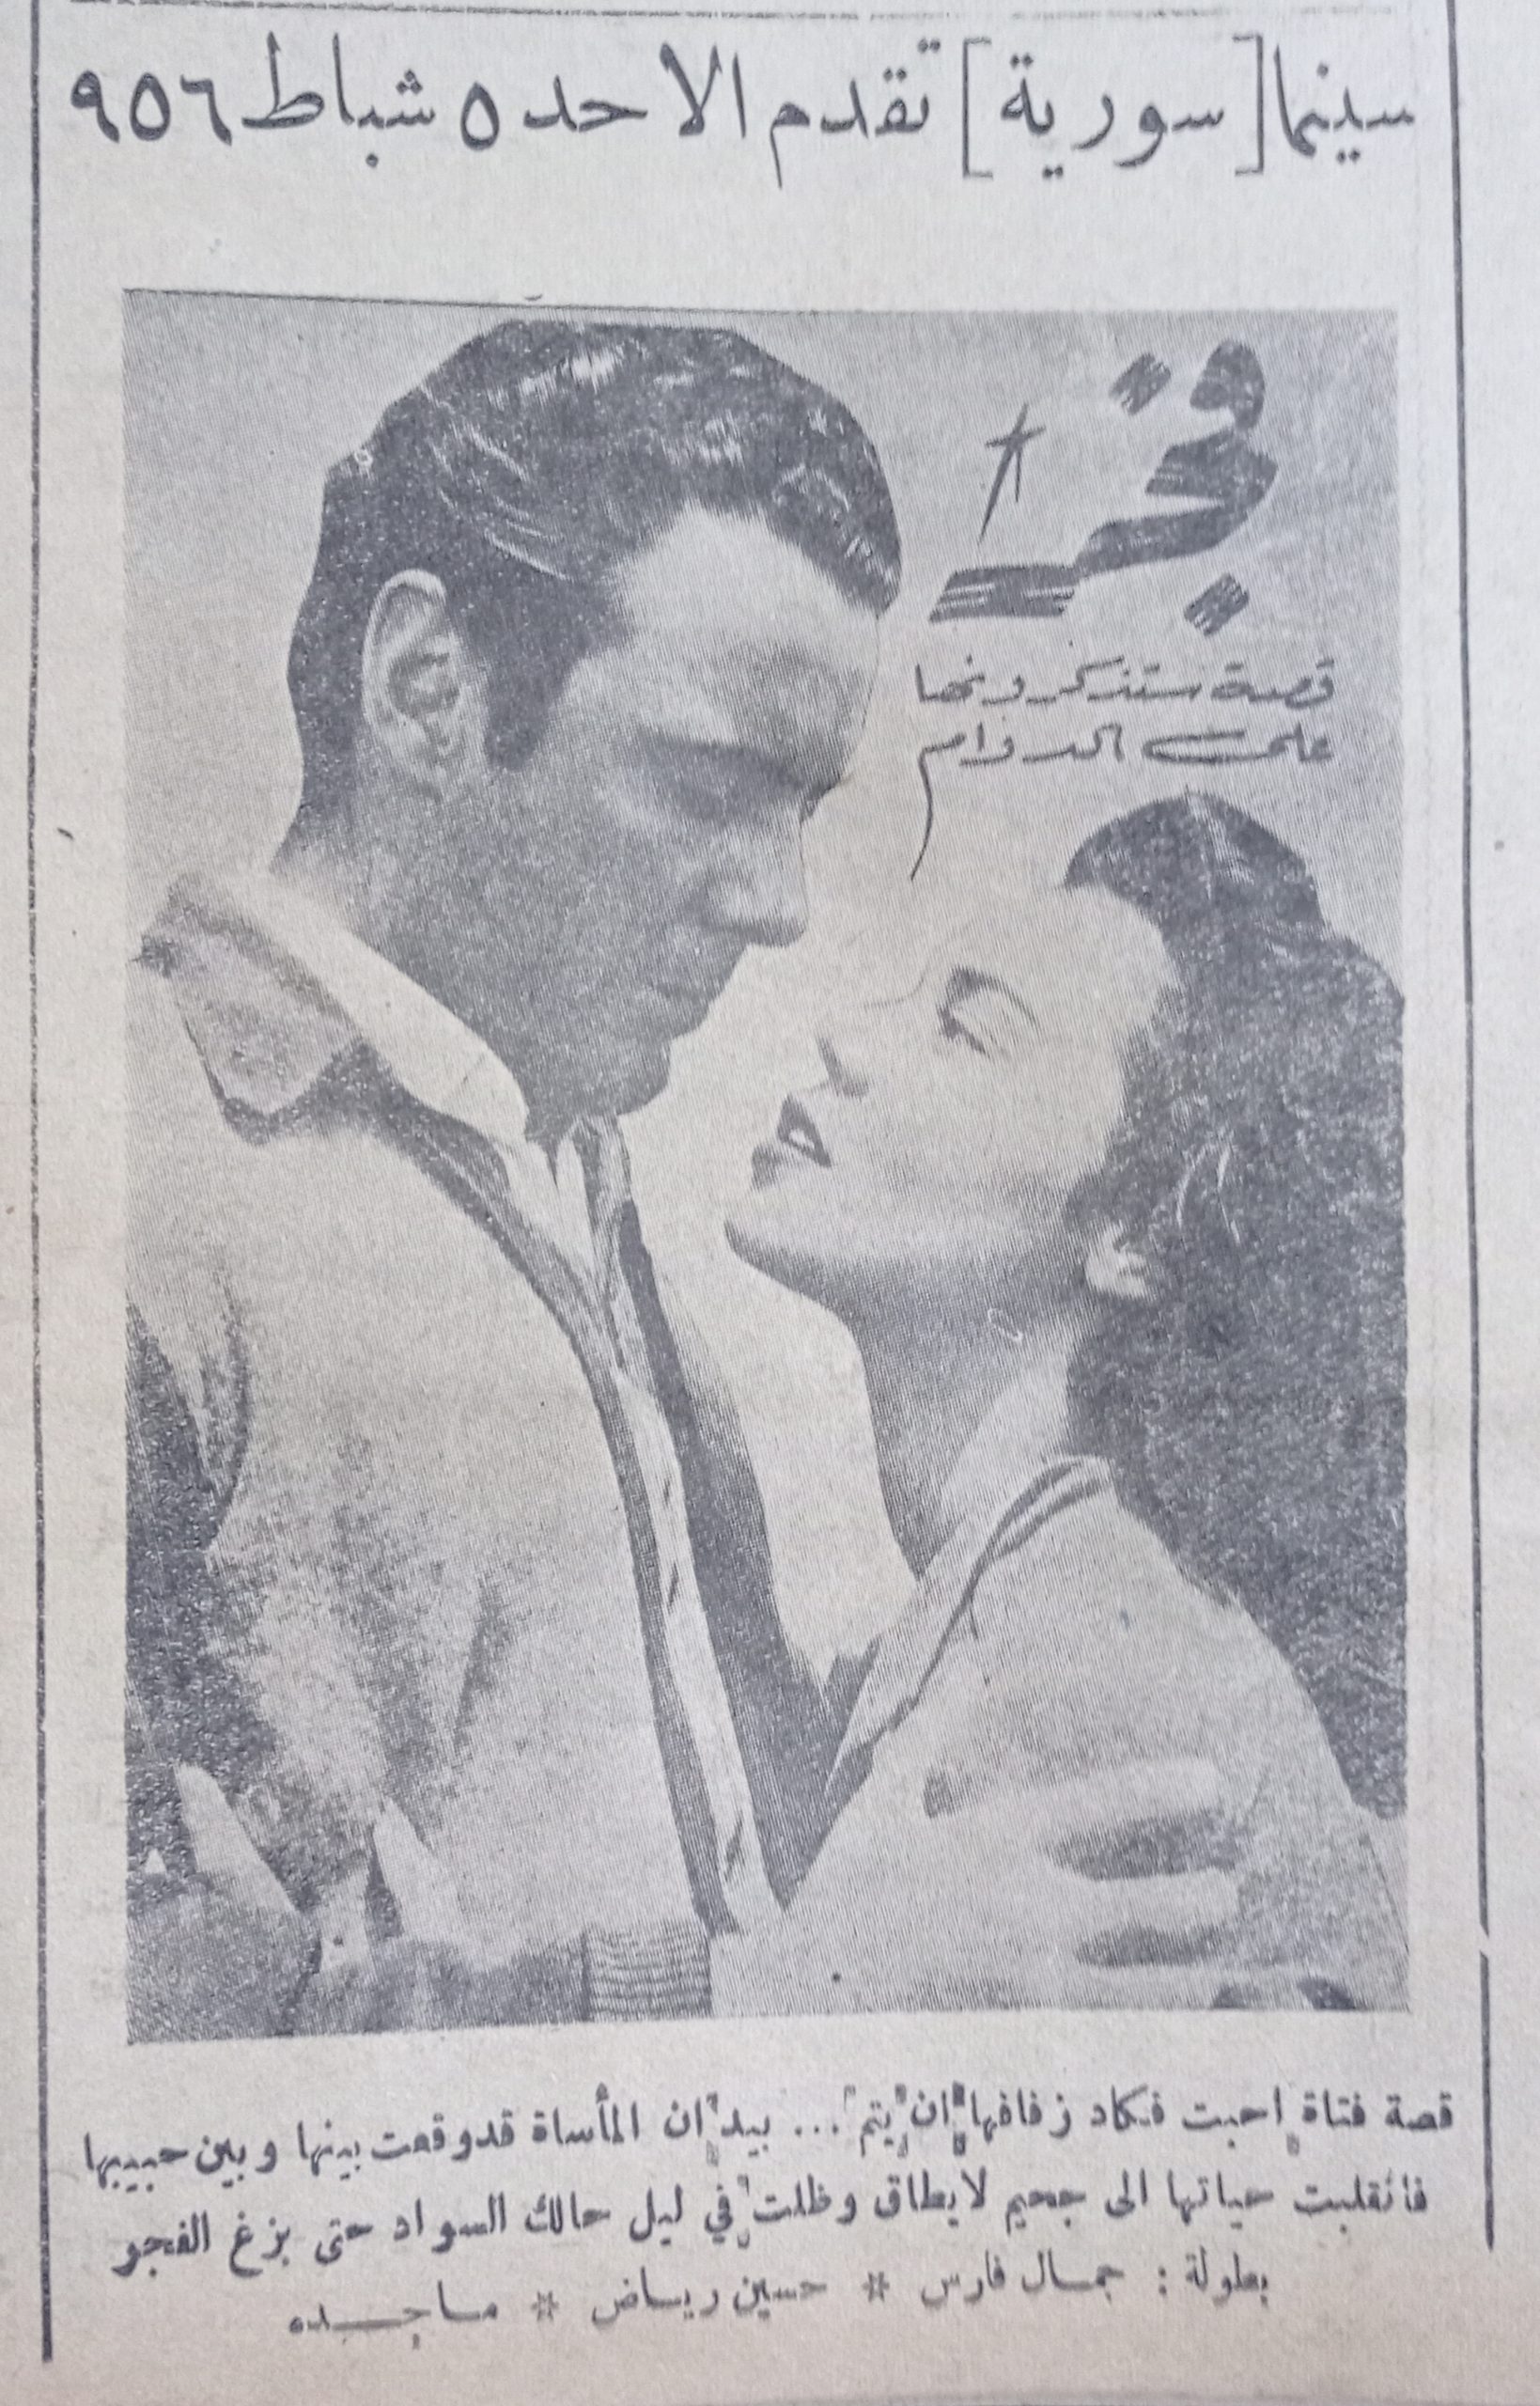 التاريخ السوري المعاصر - إعلان فيلم فجر في سينما سورية في حلب عام 1956